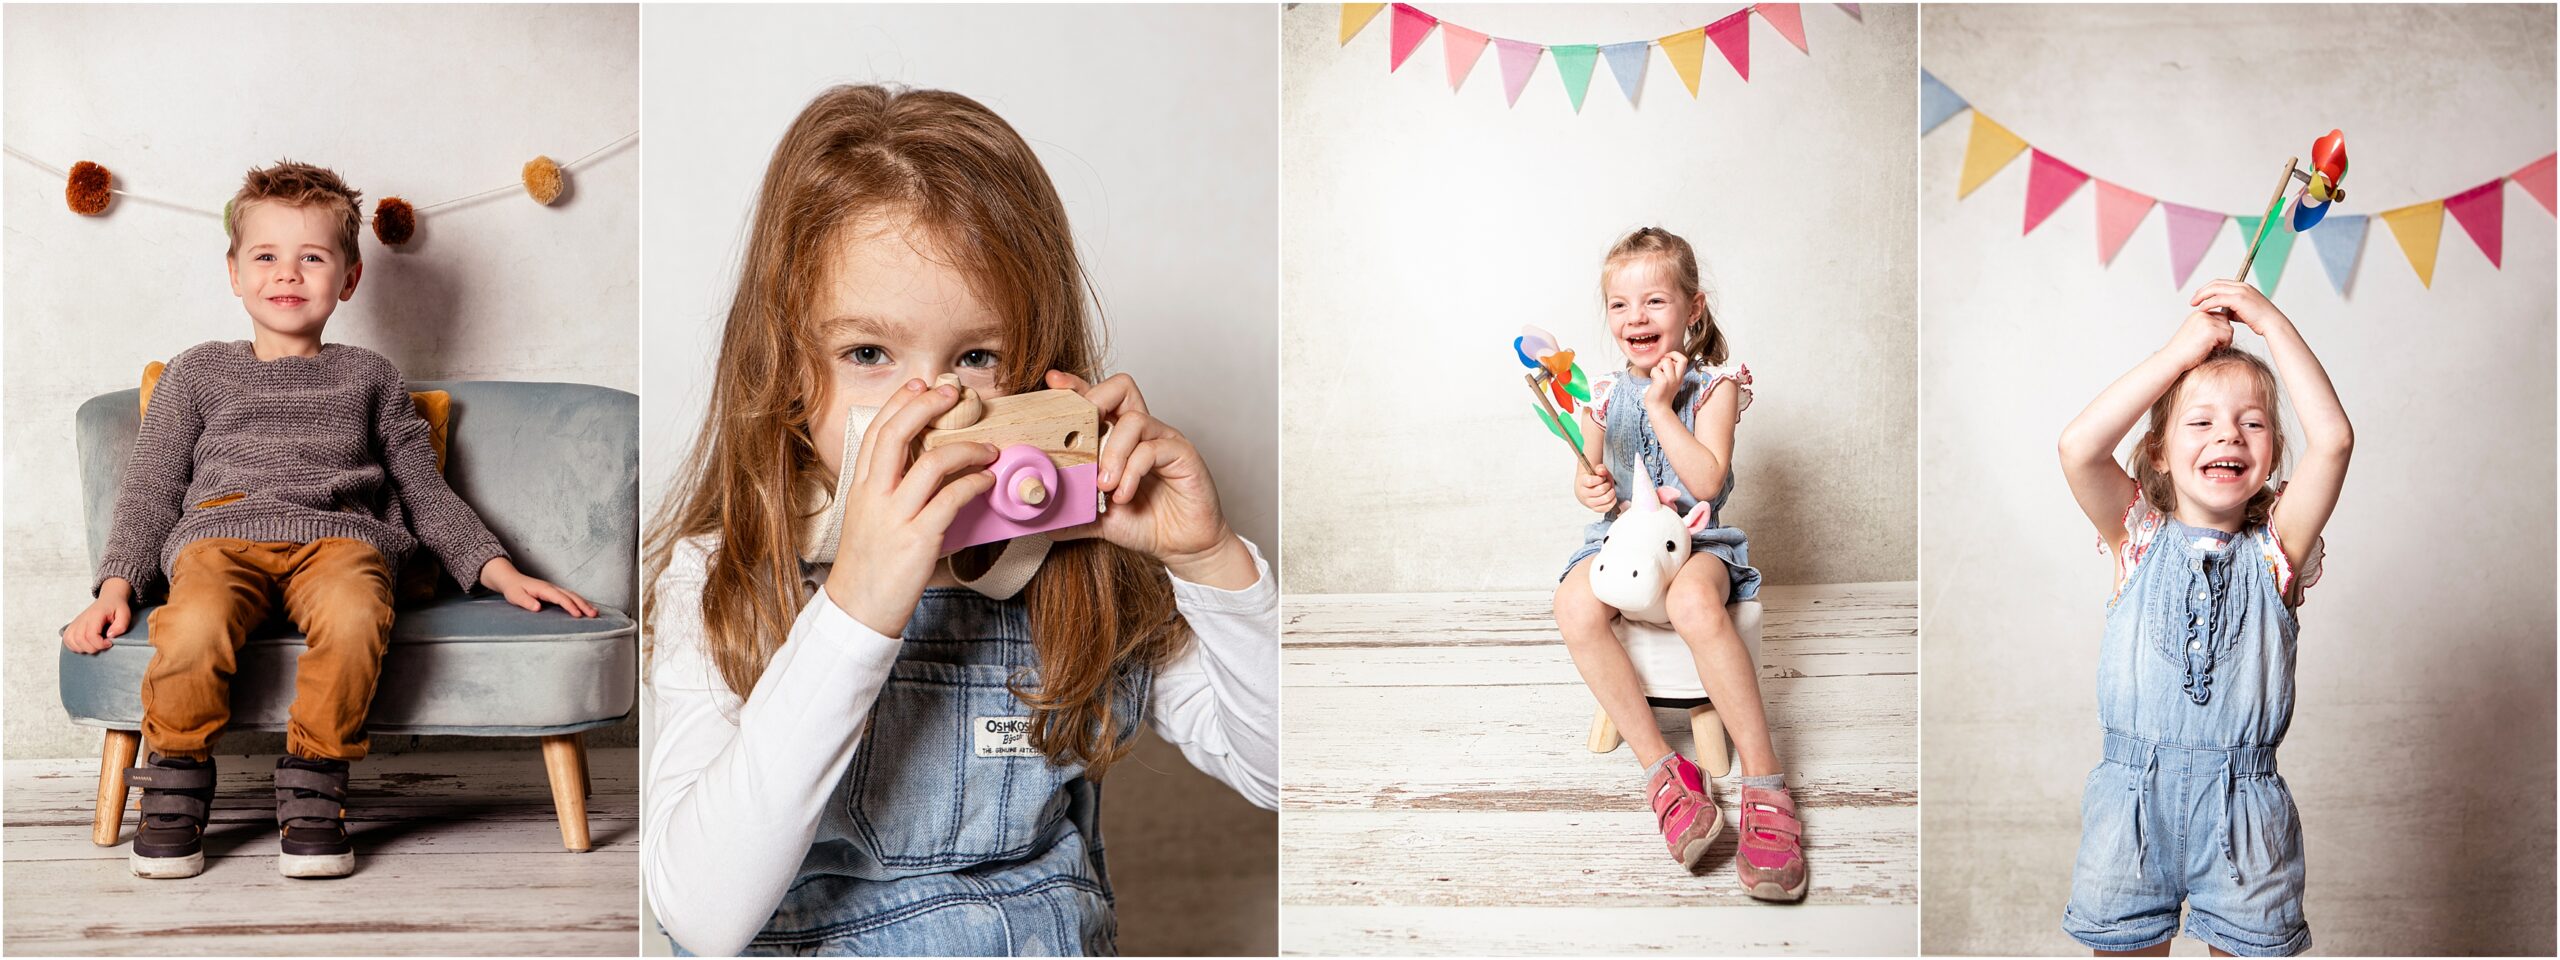 Fotocollage von Kindergartenfotos vor einem Studiohintergrund